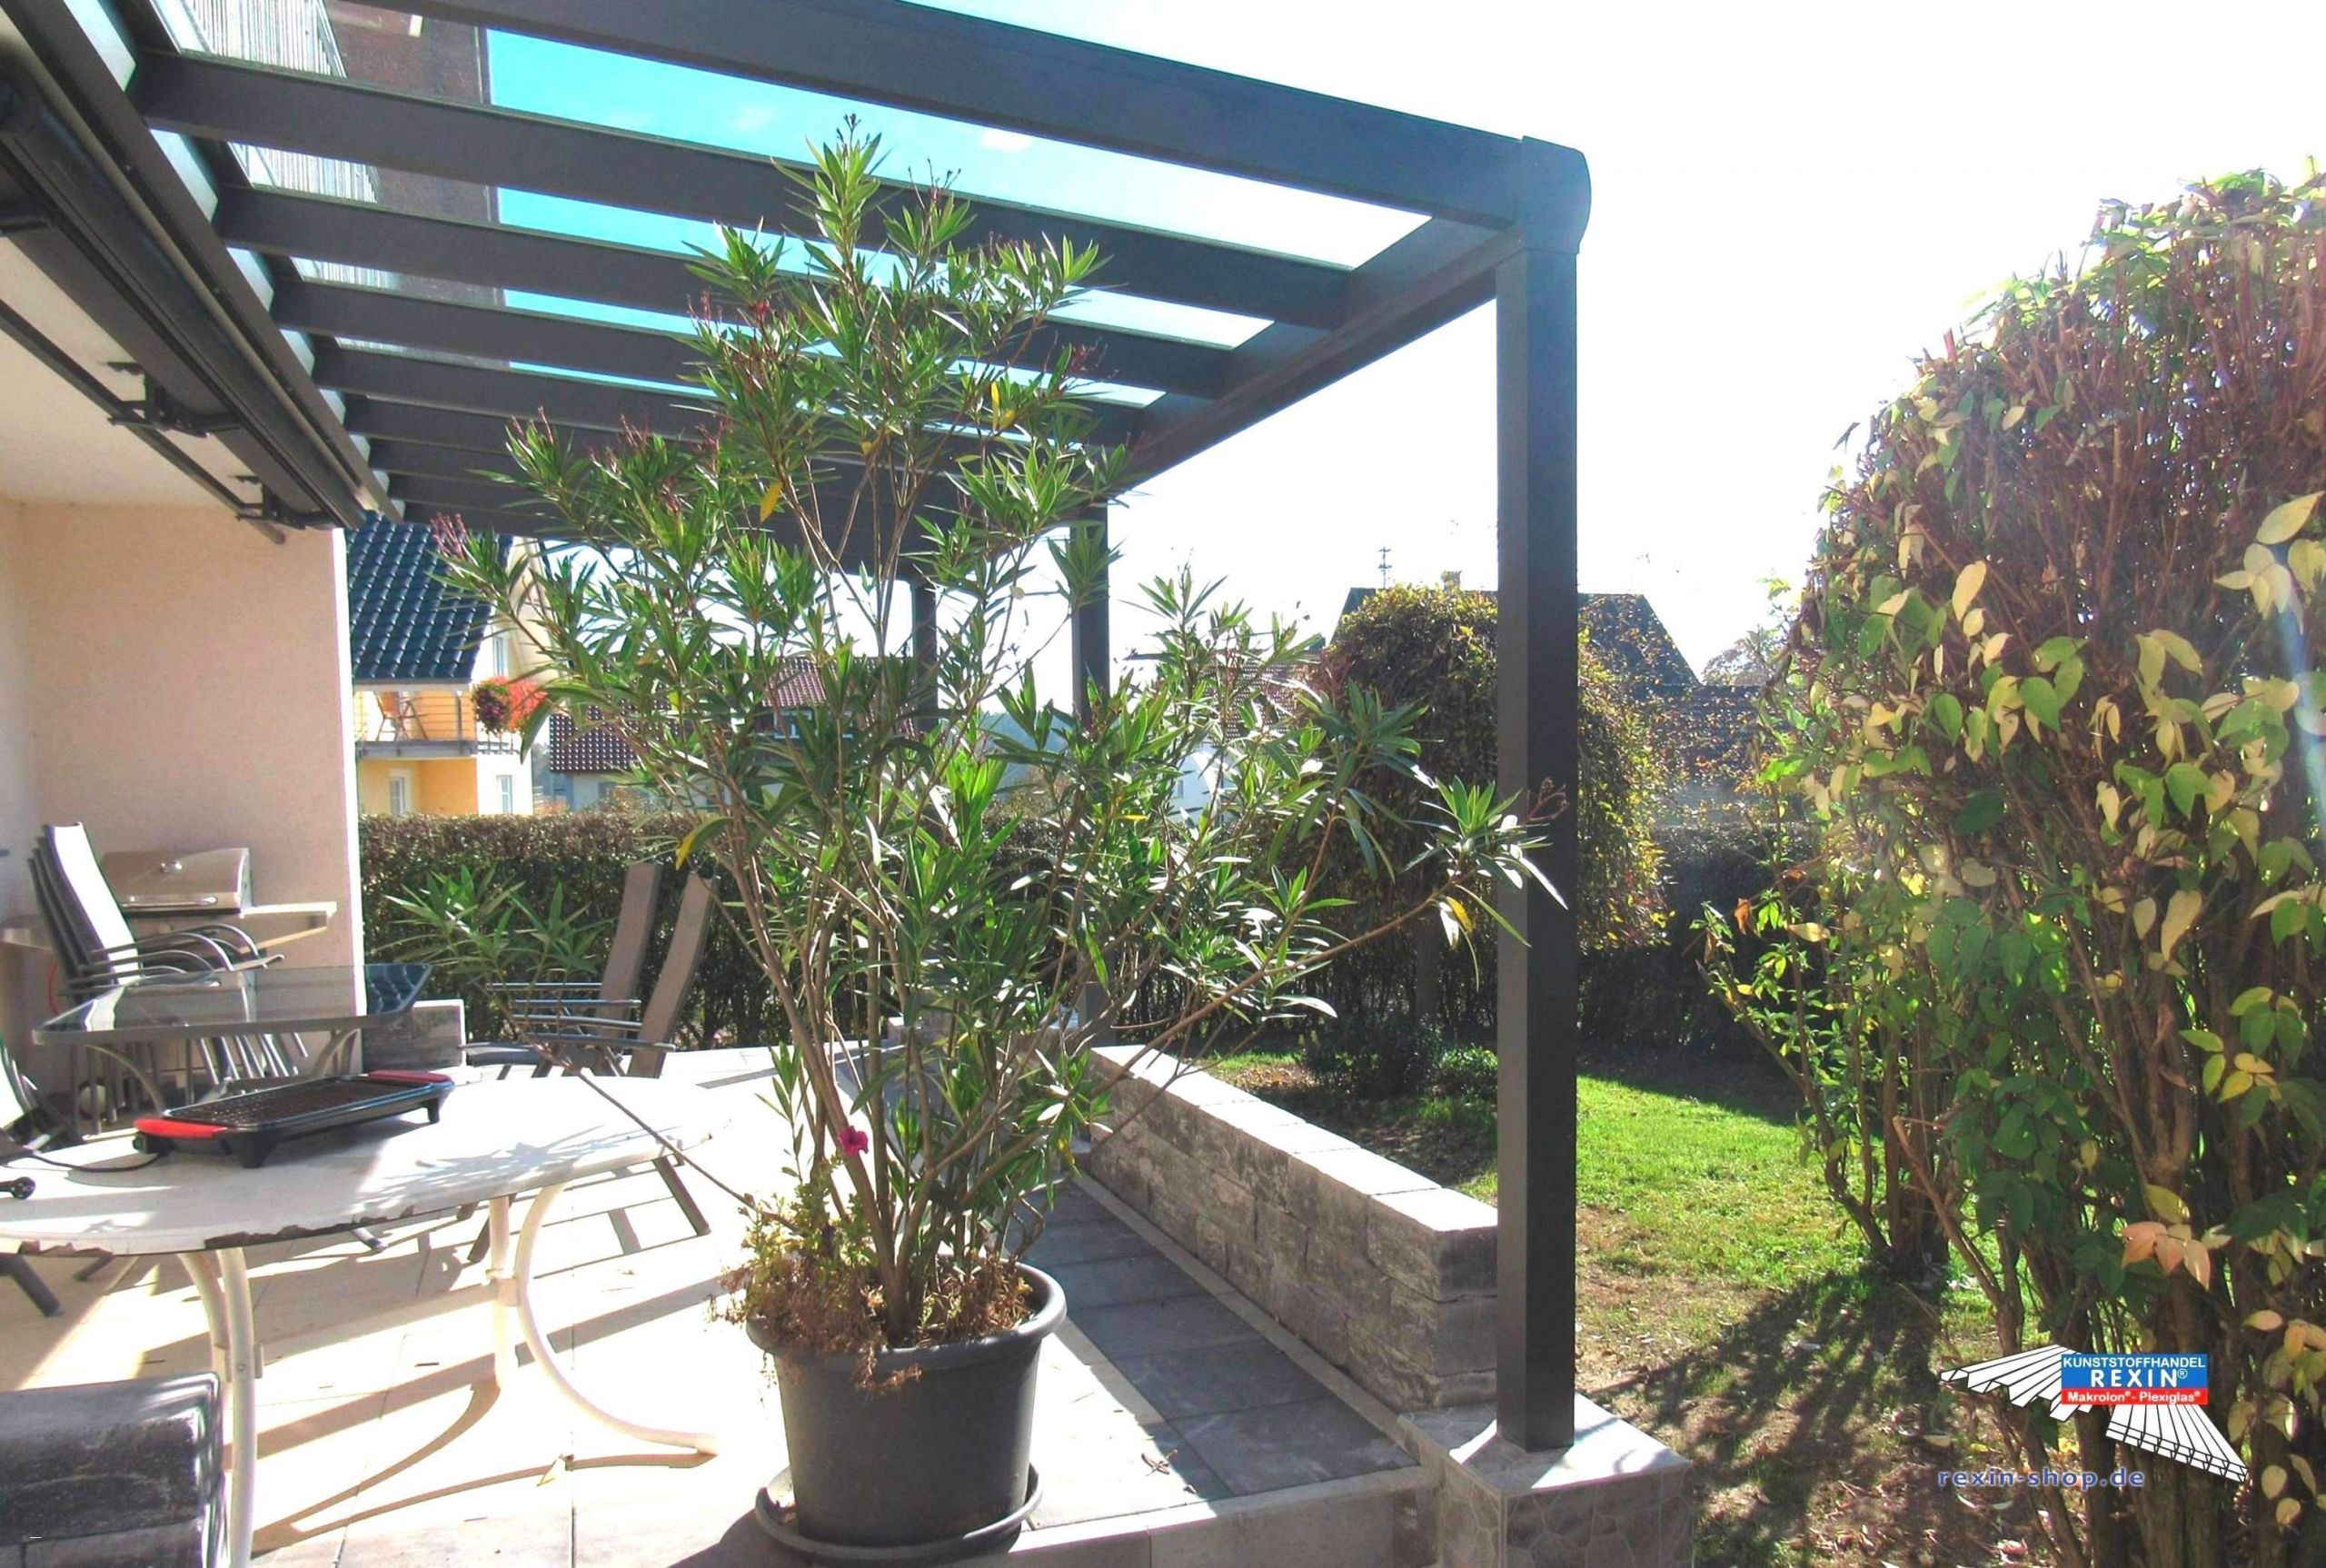 Terrassengestaltung Pflanzen Inspirierend Wohnzimmer Pflanze Reizend Schlafzimmer Boxspringbett